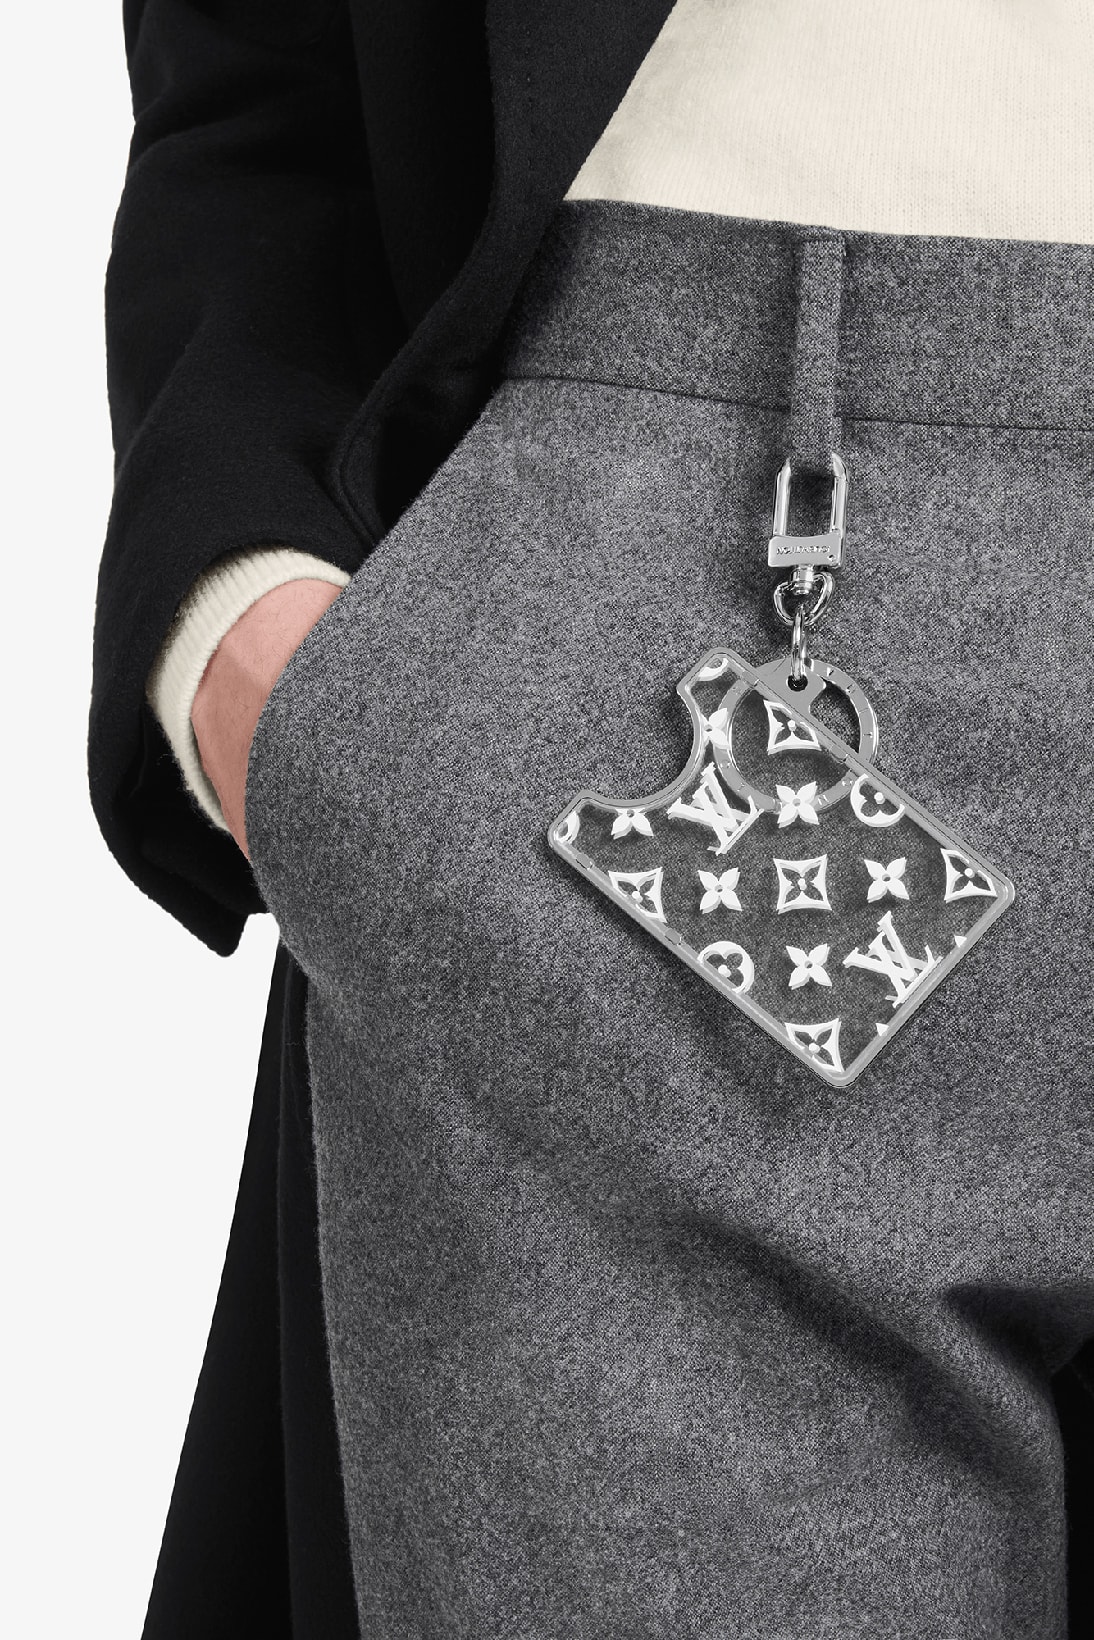 Louis Vuitton Ring Men mens accessories